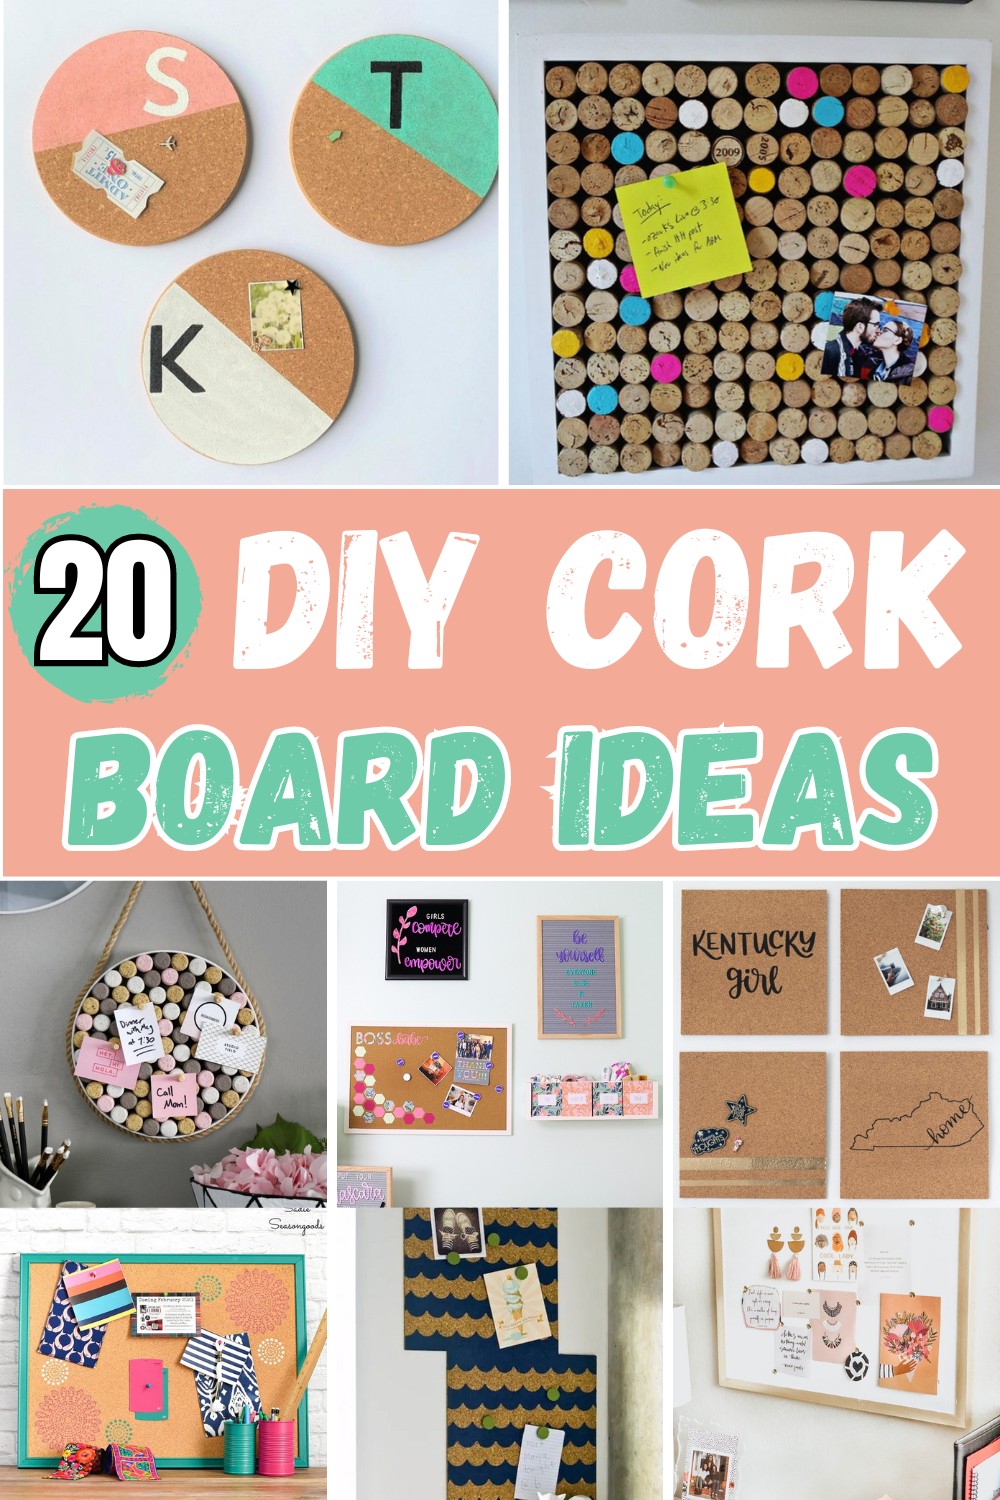 Best DIY Cork Board Ideas